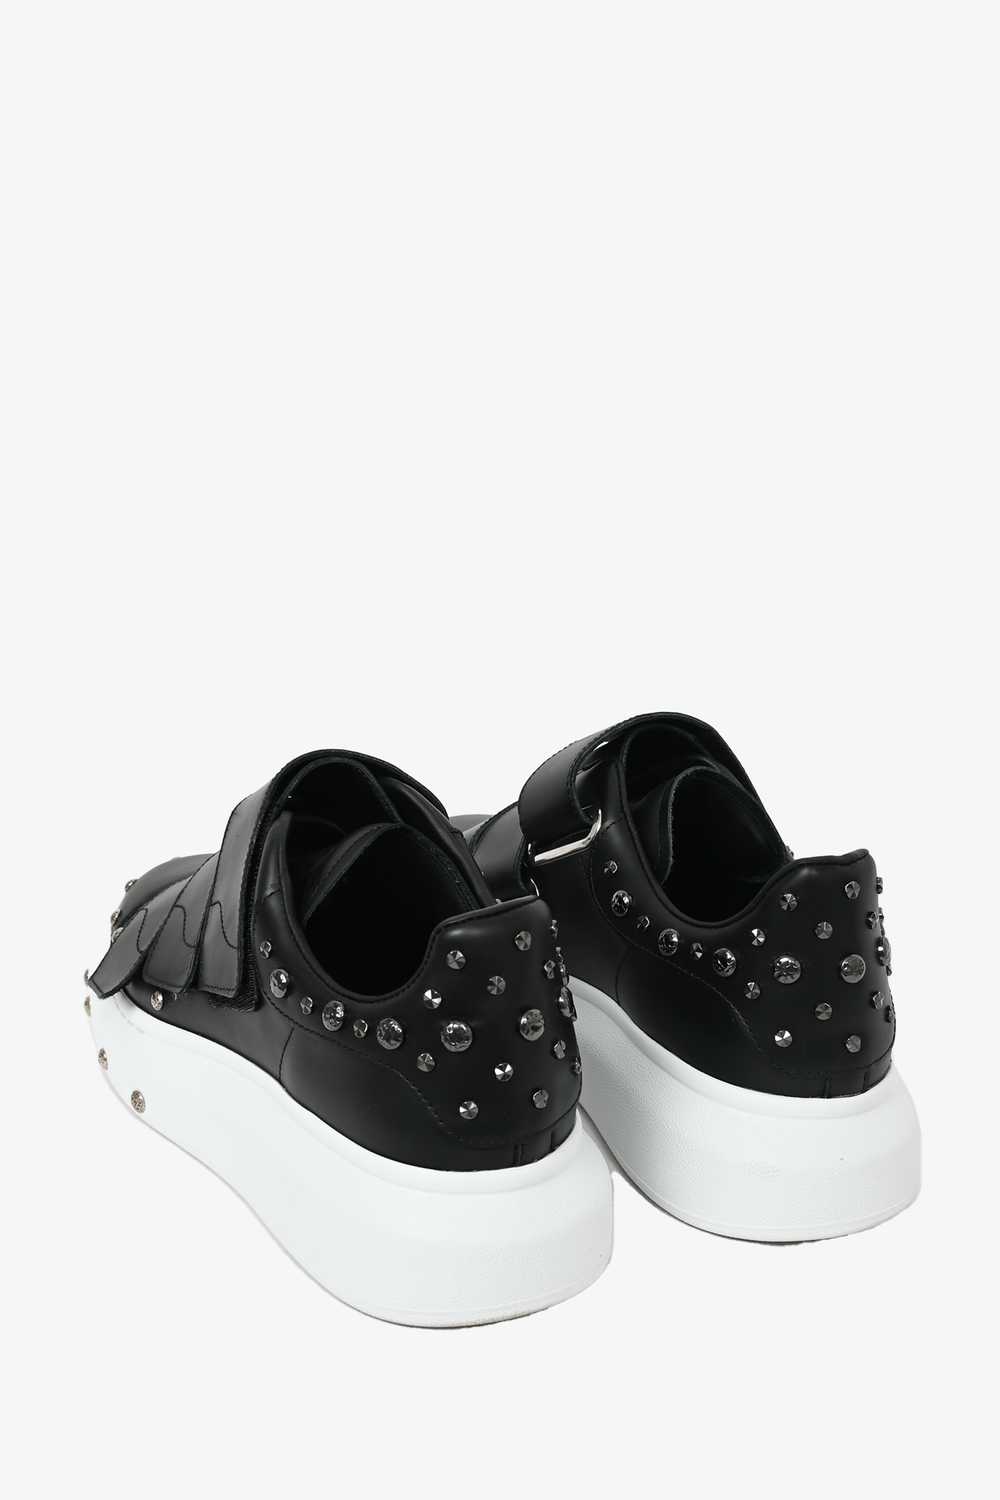 Alexander McQueen Black Leather Velcro Sneakers S… - image 4